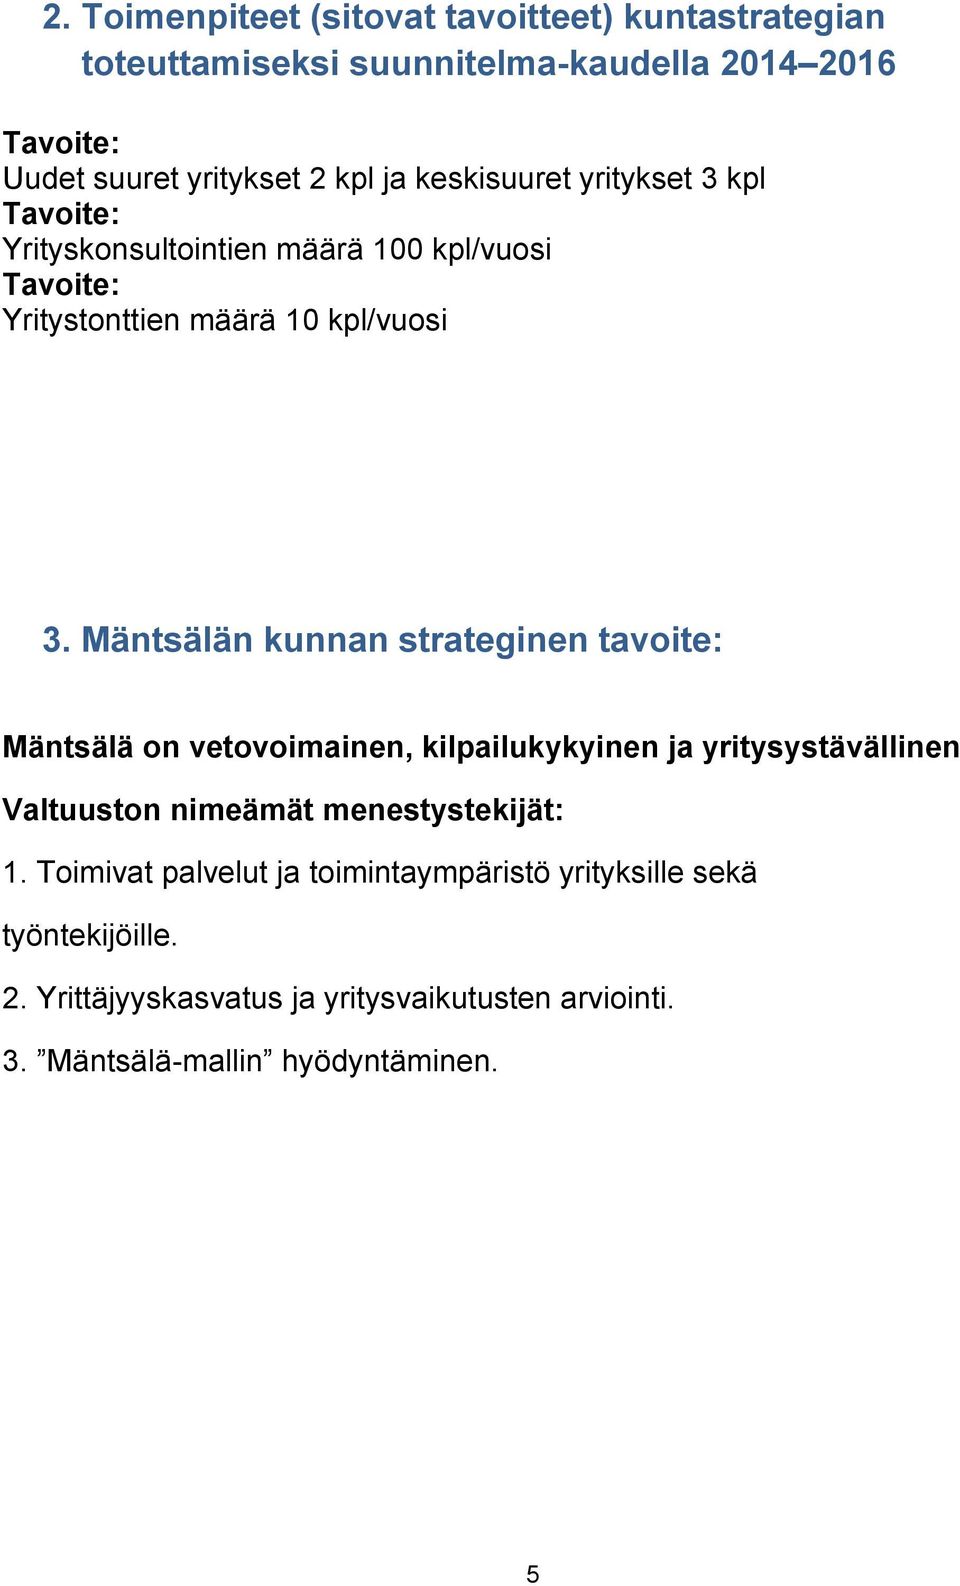 Mäntsälän kunnan strateginen tavoite: Mäntsälä on vetovoimainen, kilpailukykyinen ja yritysystävällinen Valtuuston nimeämät menestystekijät: 1.